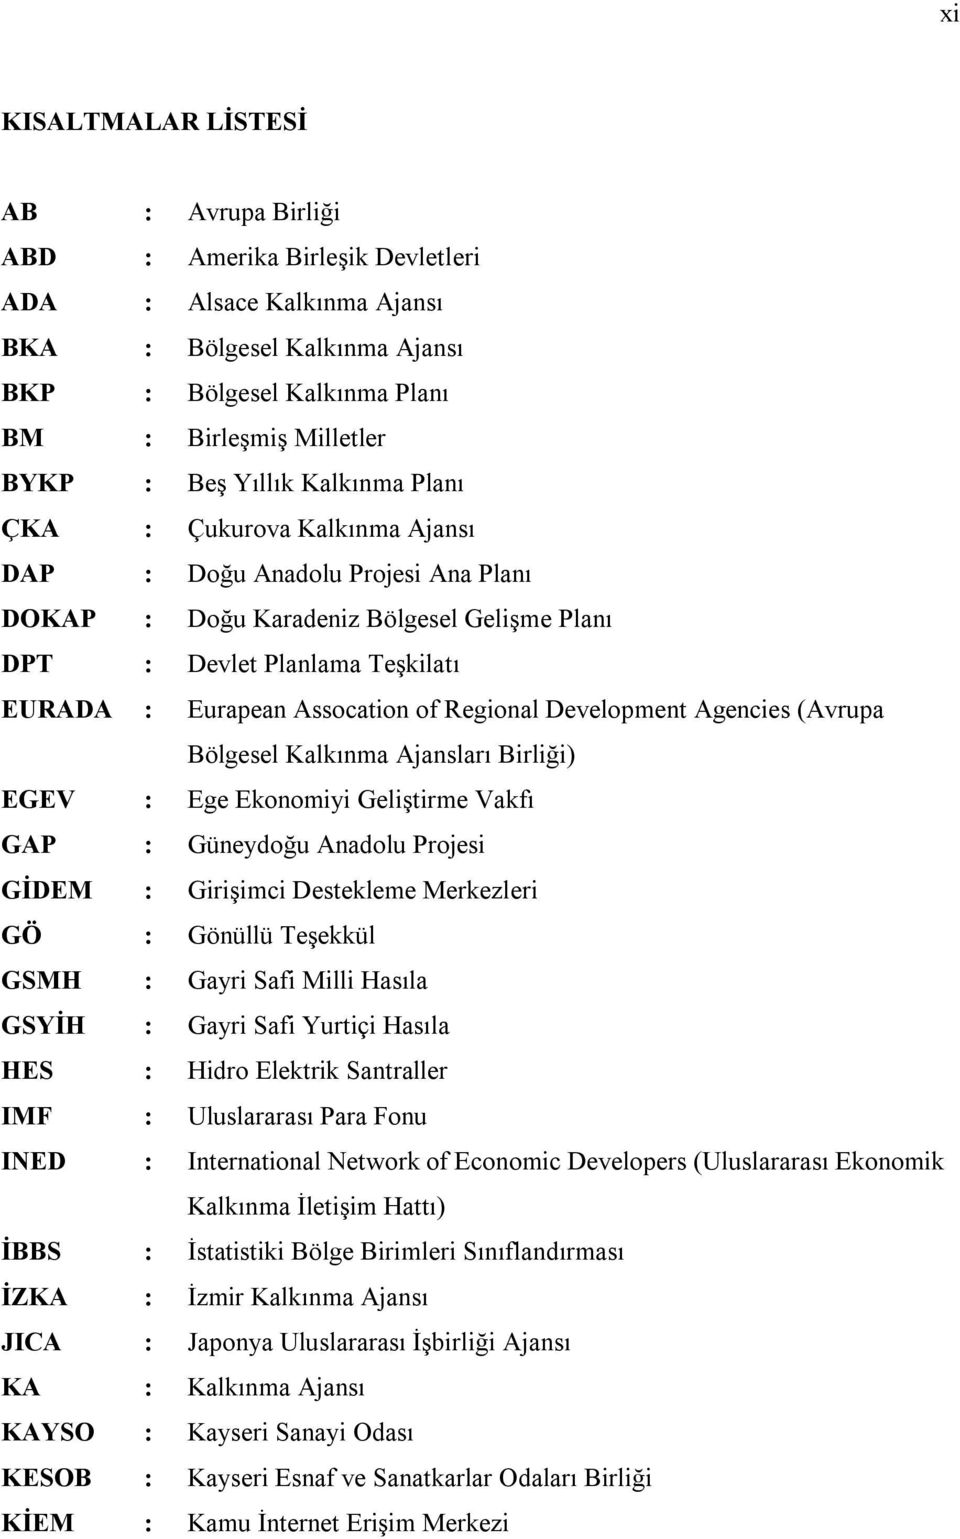 Assocation of Regional Development Agencies (Avrupa Bölgesel Kalkınma Ajansları Birliği) EGEV : Ege Ekonomiyi Geliştirme Vakfı GAP : Güneydoğu Anadolu Projesi GİDEM : Girişimci Destekleme Merkezleri